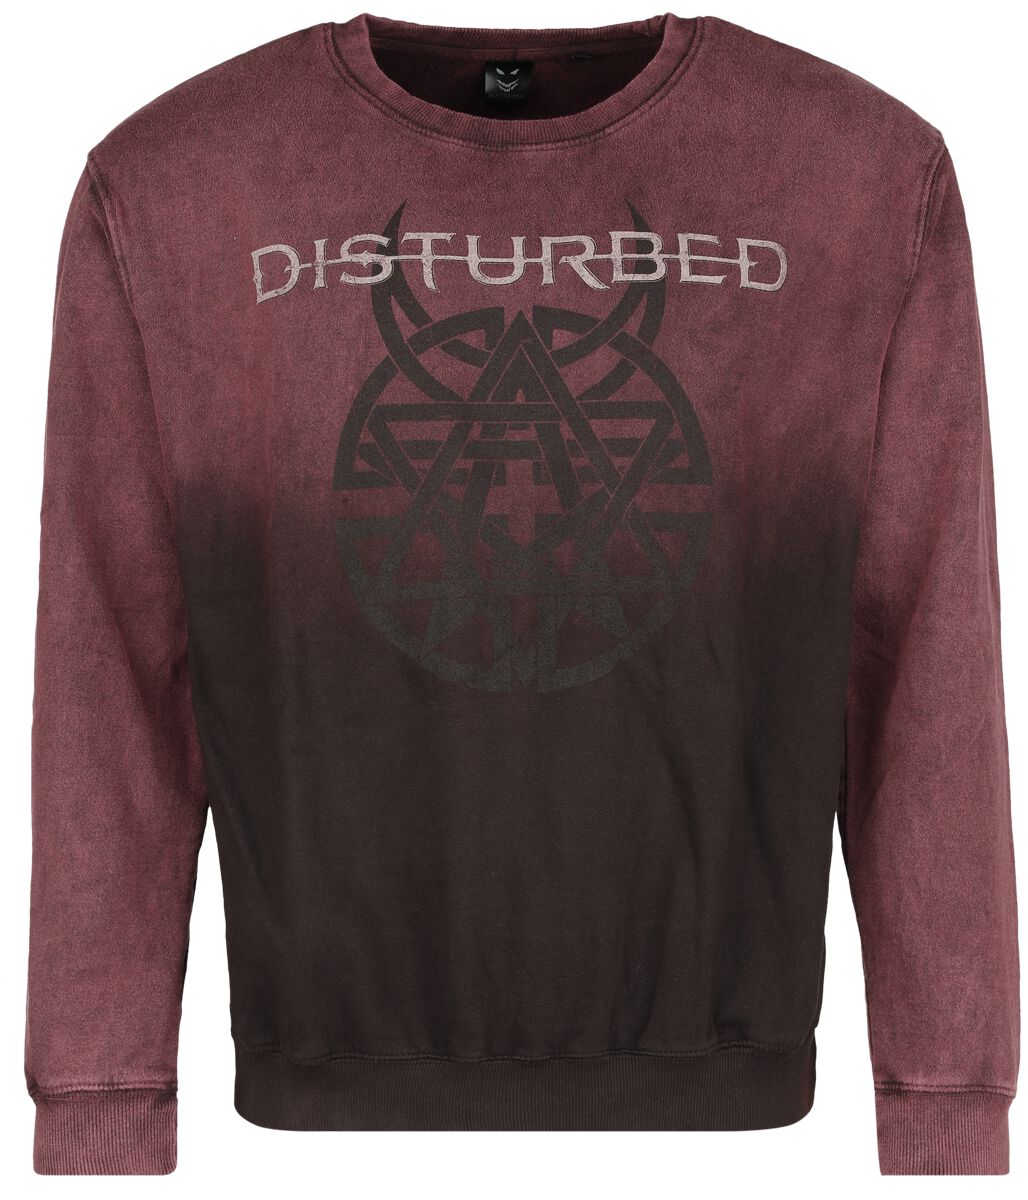 Disturbed Believe Symbol Sweatshirt dunkelrot in L